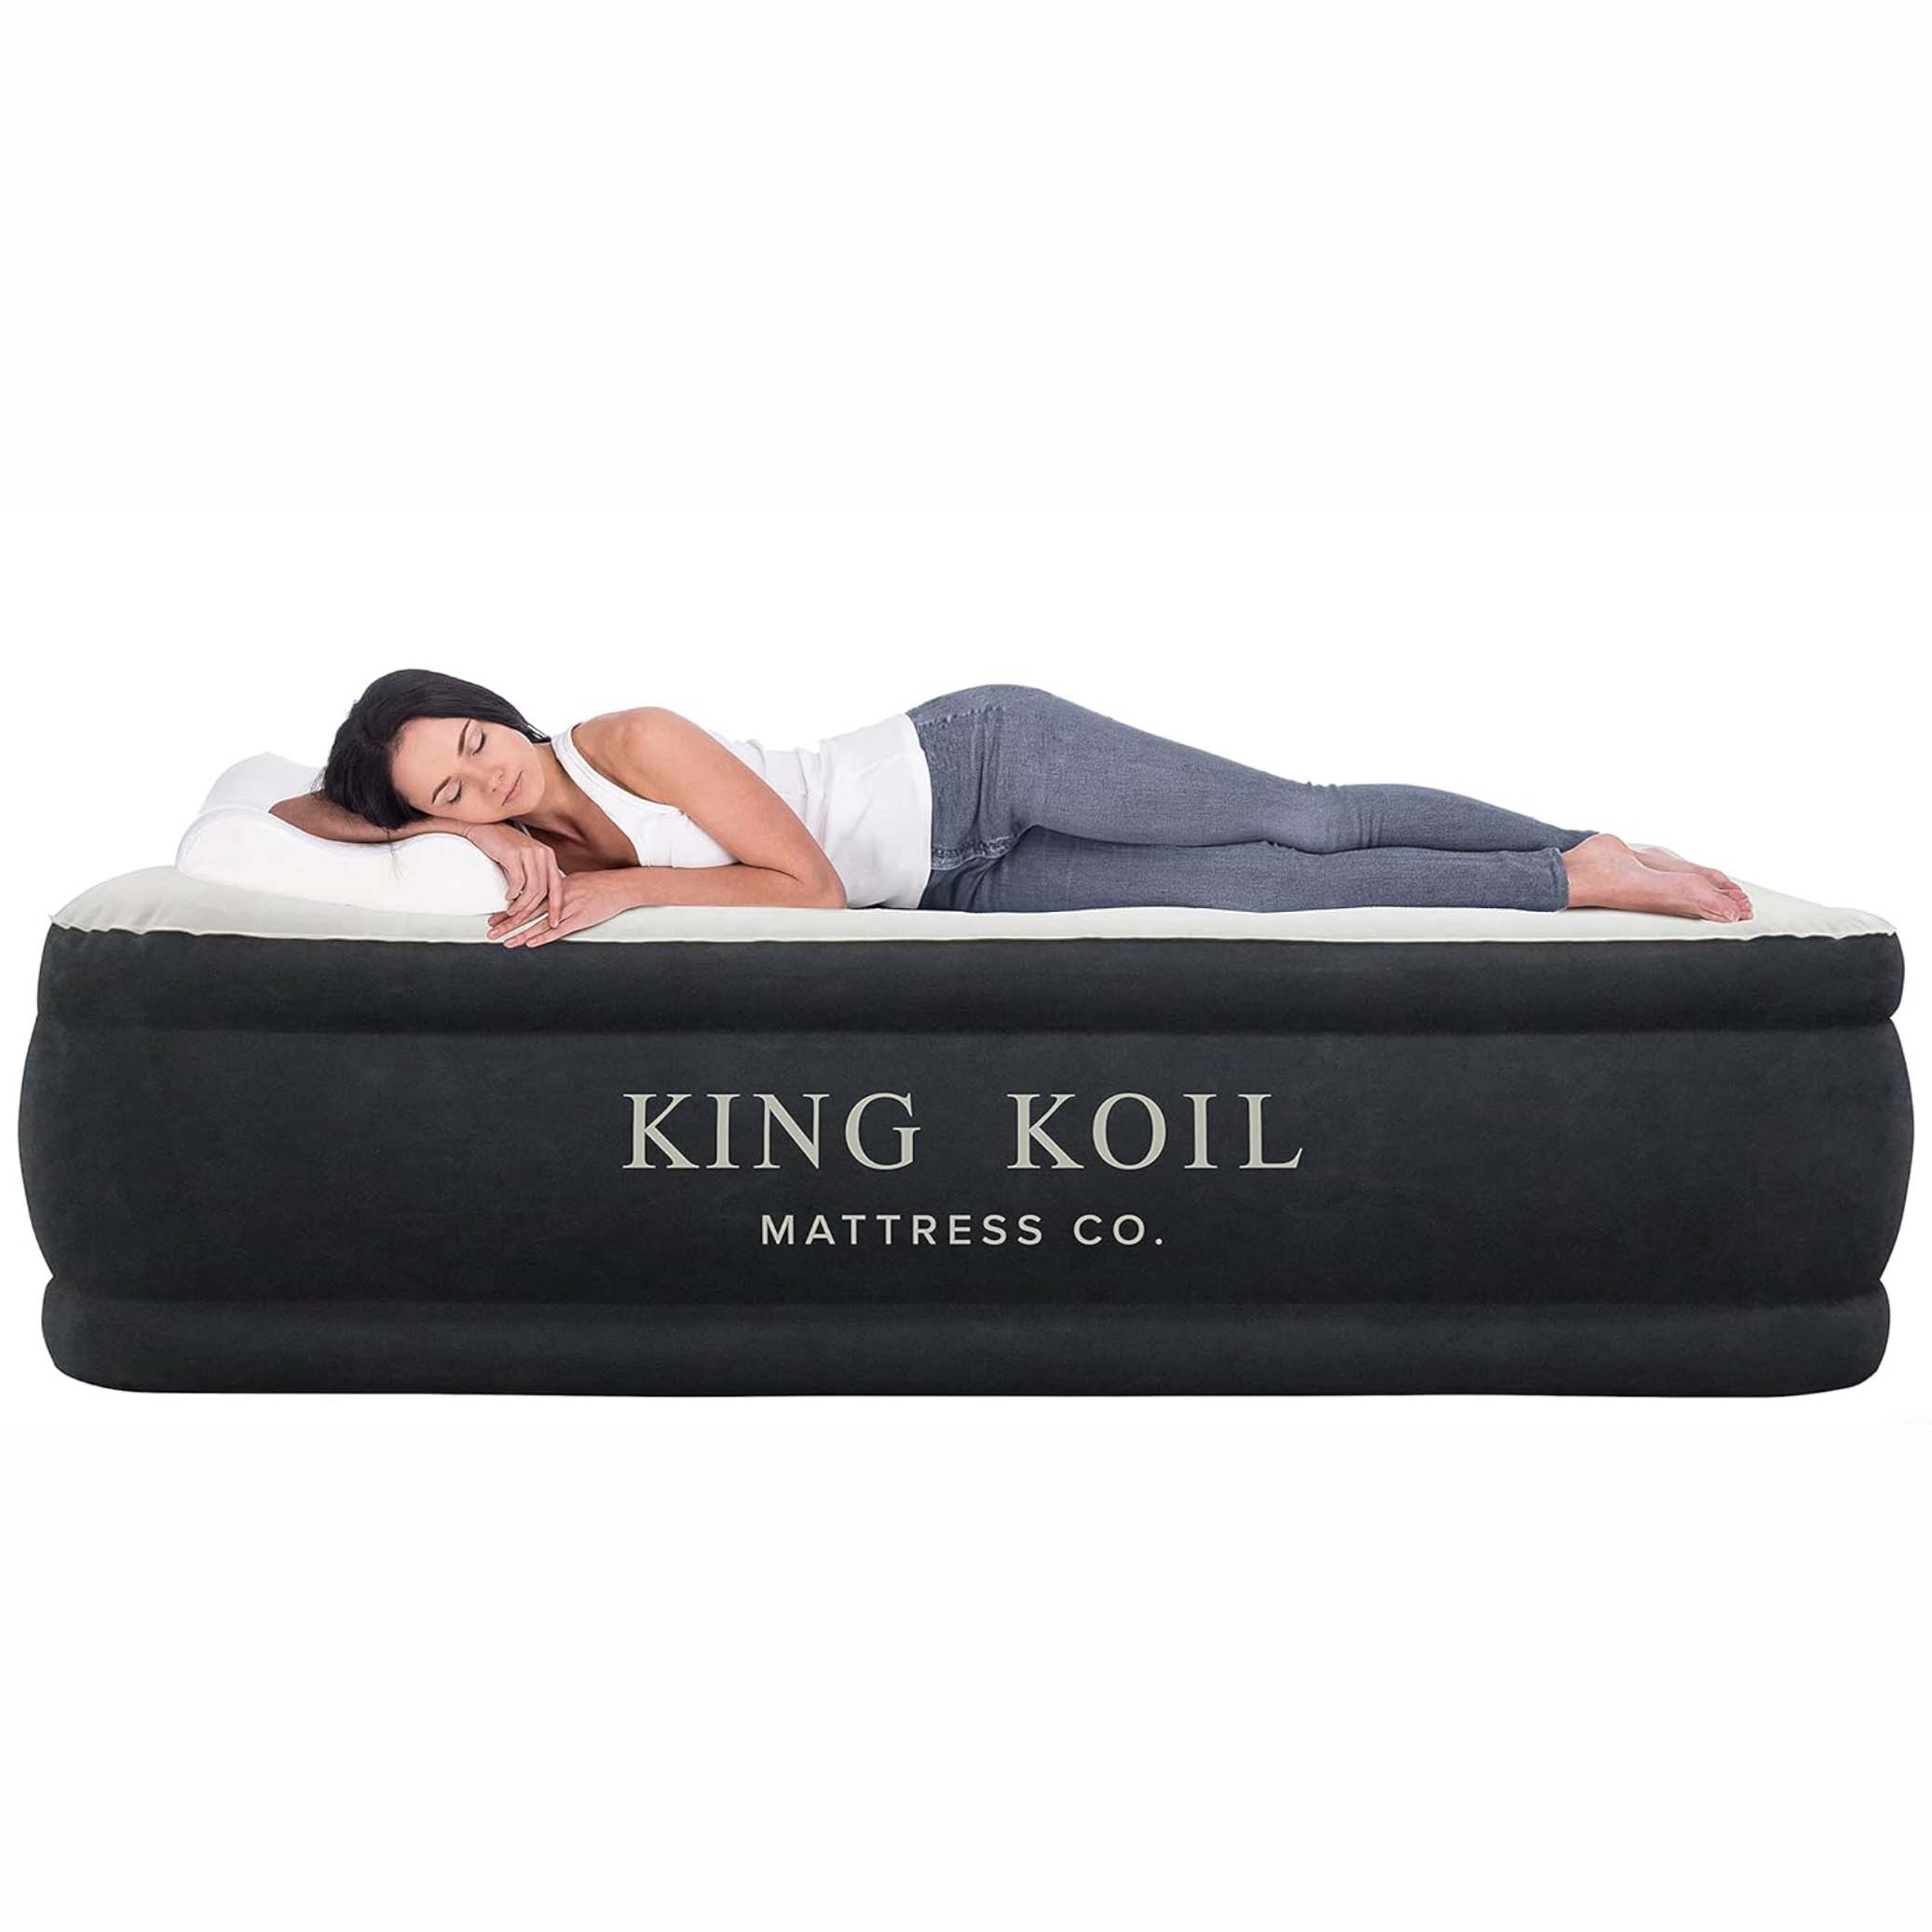 Woman sleeping on air mattress